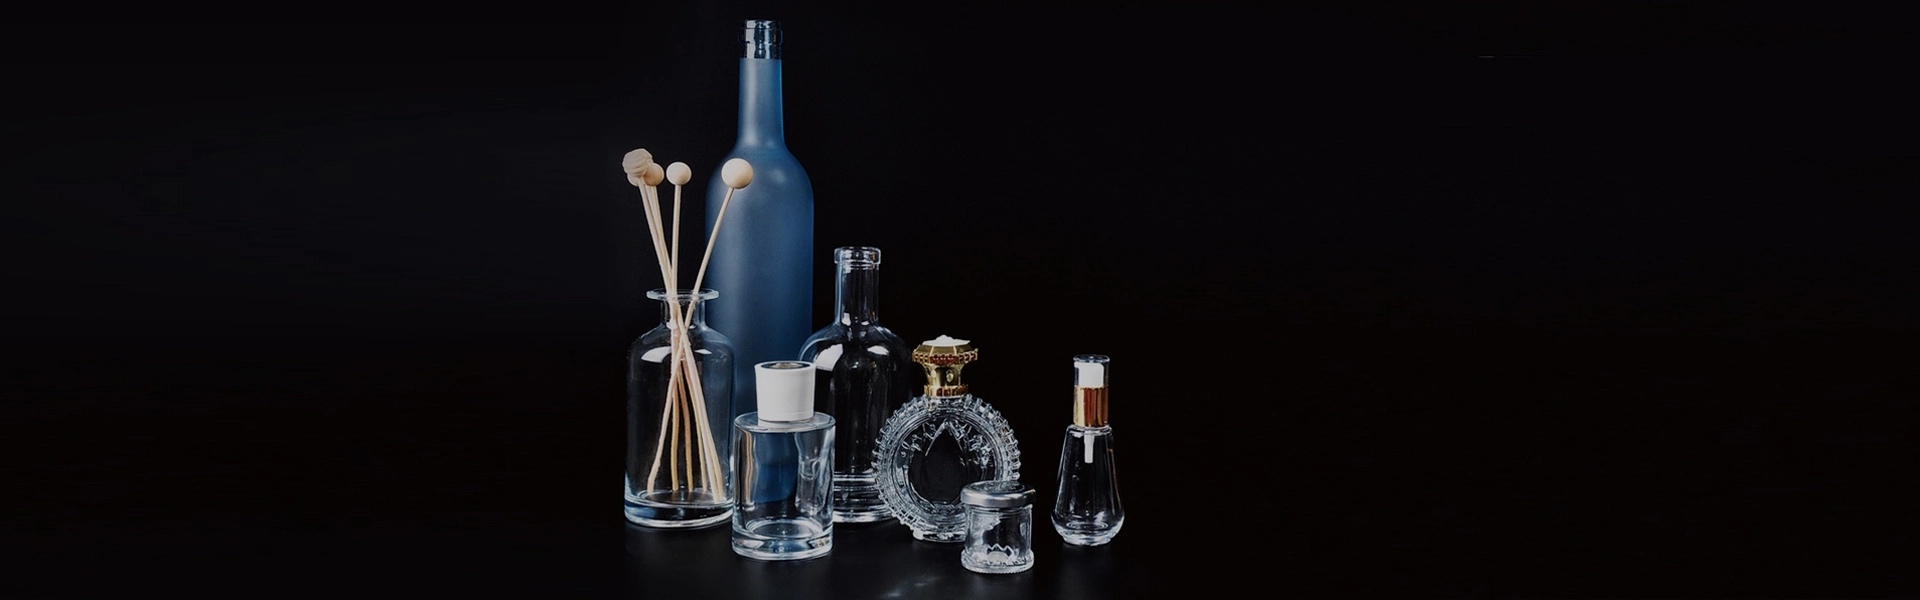 200-500ml Glass Bottles Types